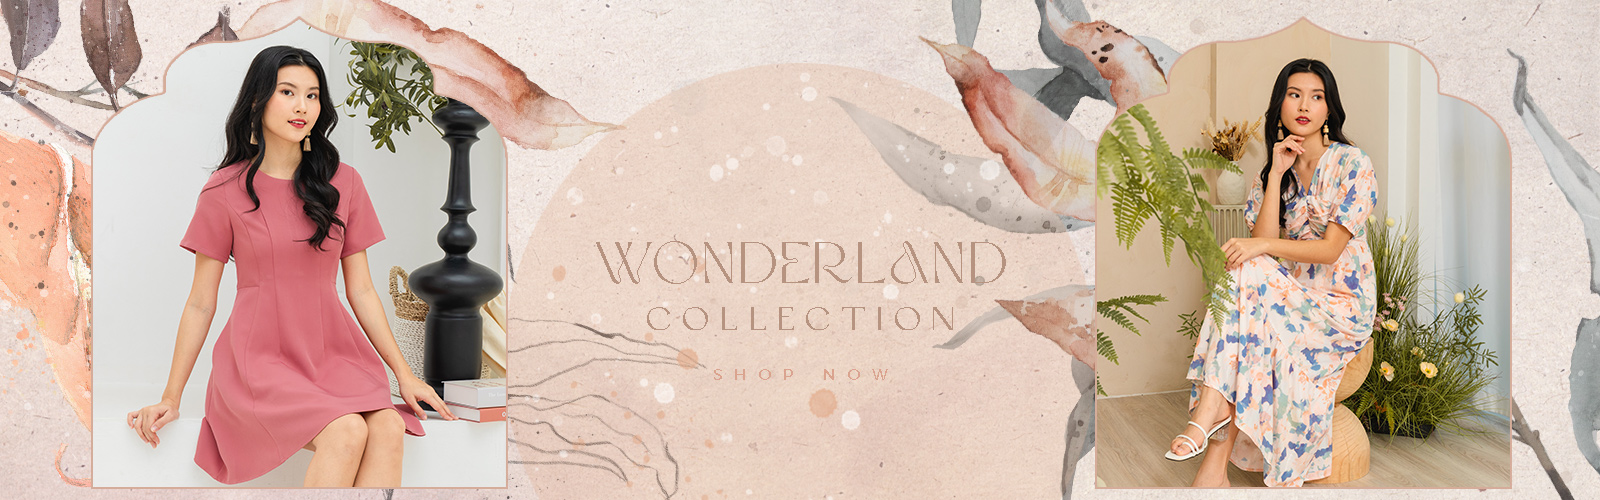 Wonderland Collection